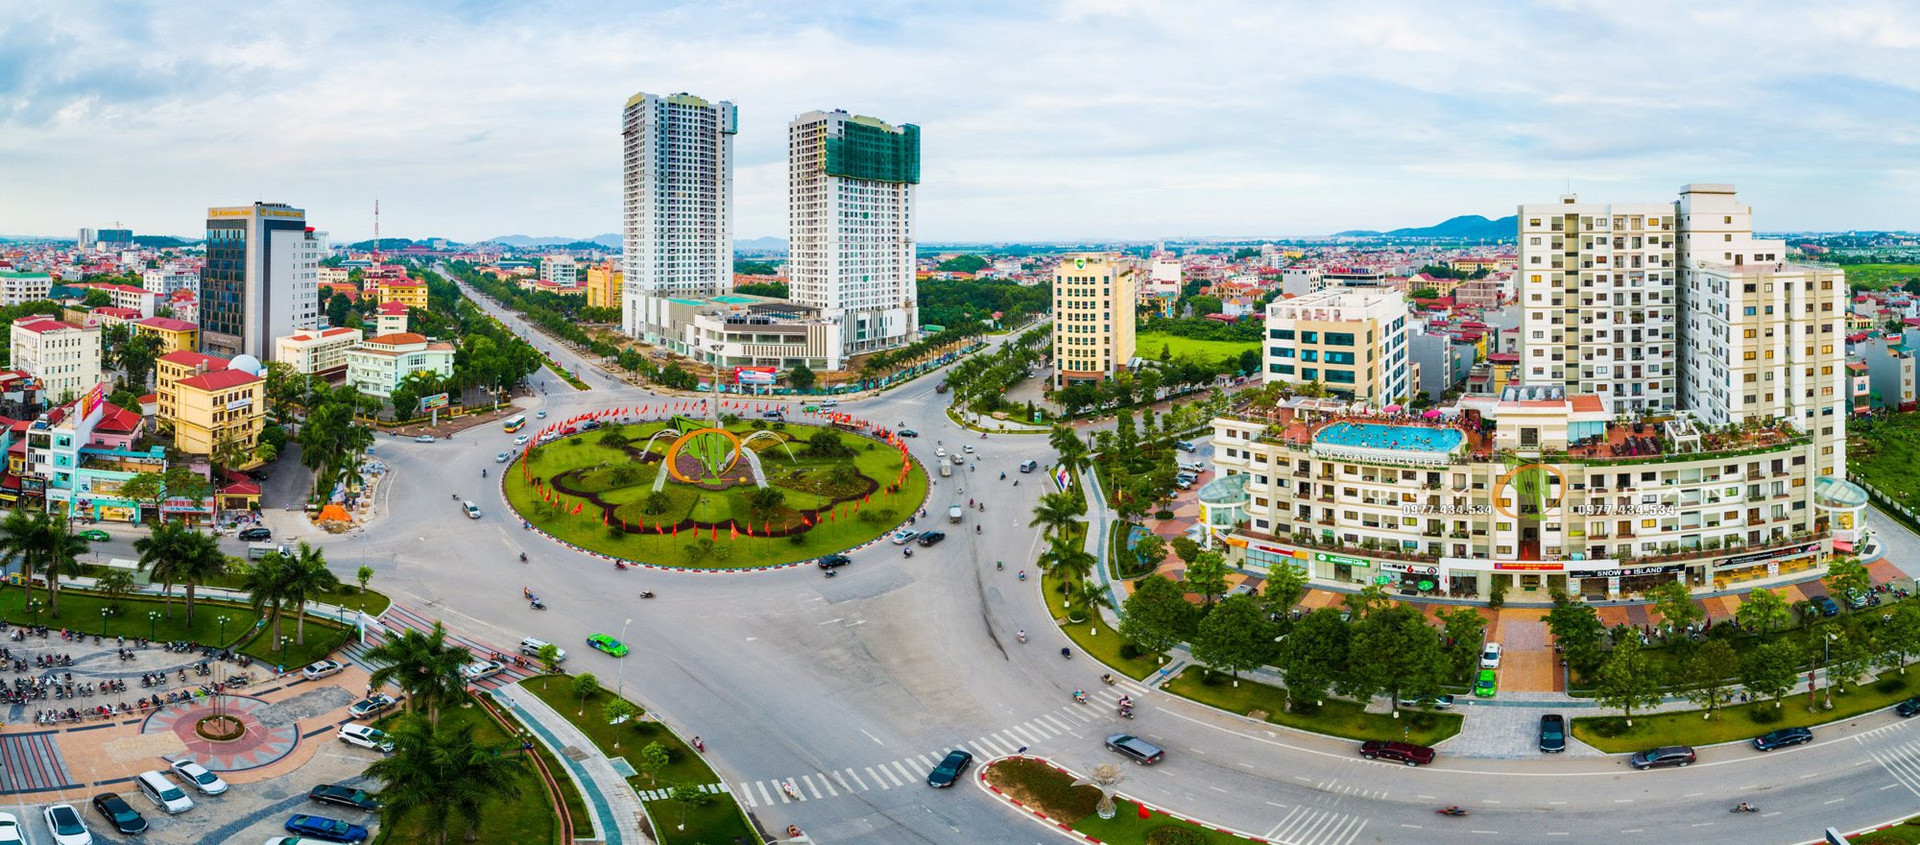 Tình hình kinh tế của tỉnh nhỏ nhất Việt Nam sắp lên thành phố trực thuộc trung ương: Hút tới 1,4 tỷ USD vốn FDI, đang là “quán quân” về xuất khẩu
